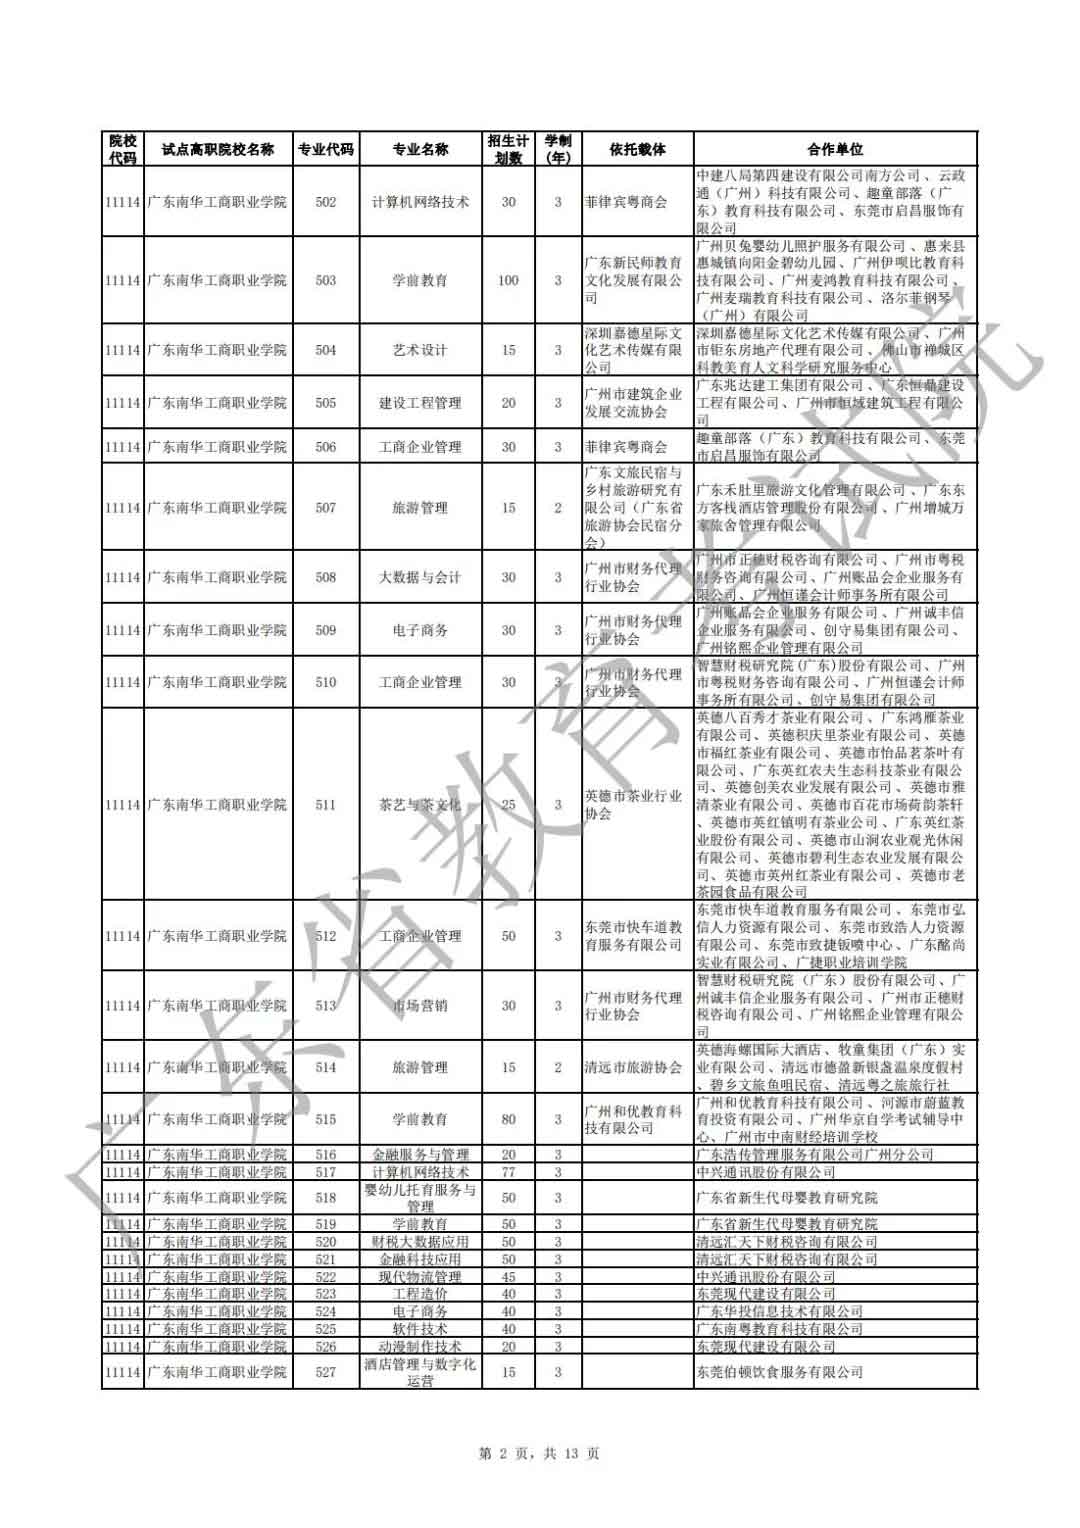 广东省2021年高职扩招专项行动现代学徒制试点招生院校专业公布(图2)